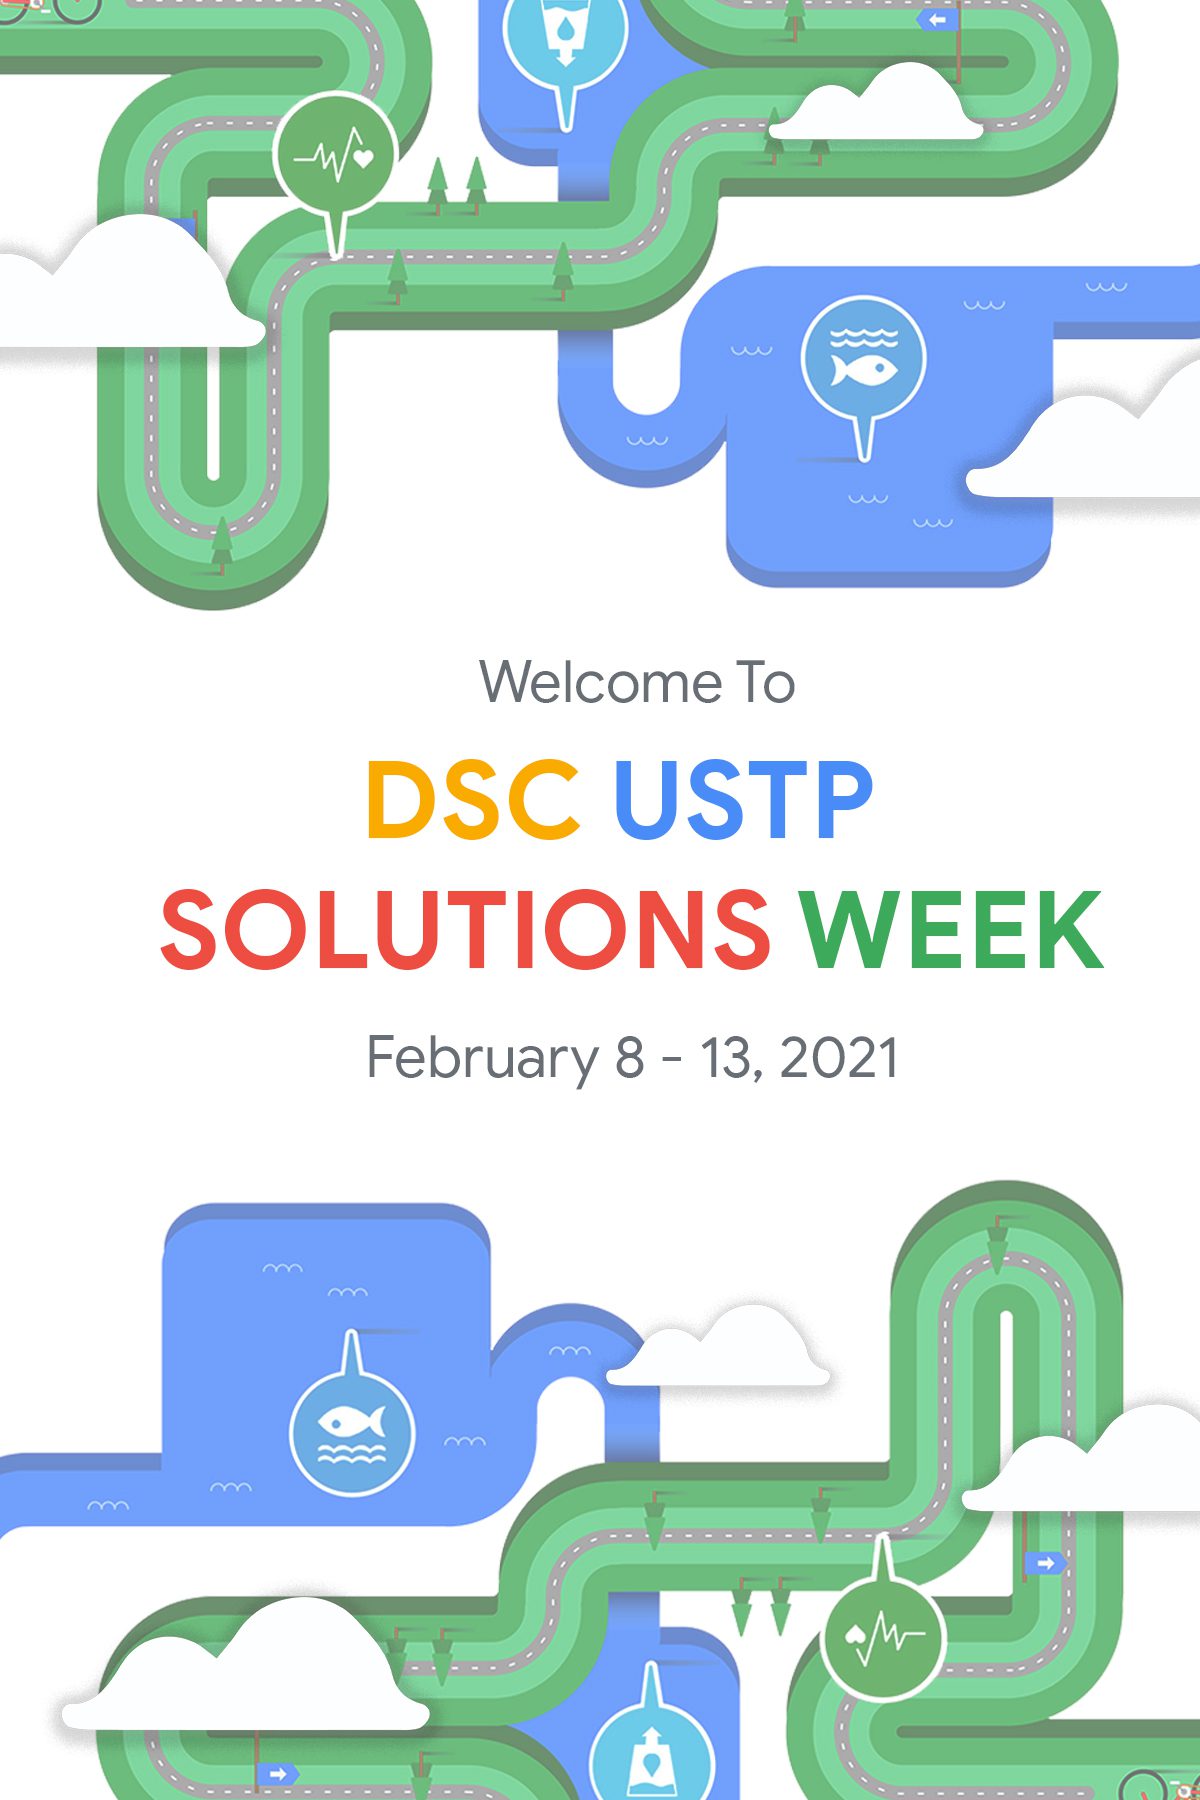 DSC USTP Solutions Week